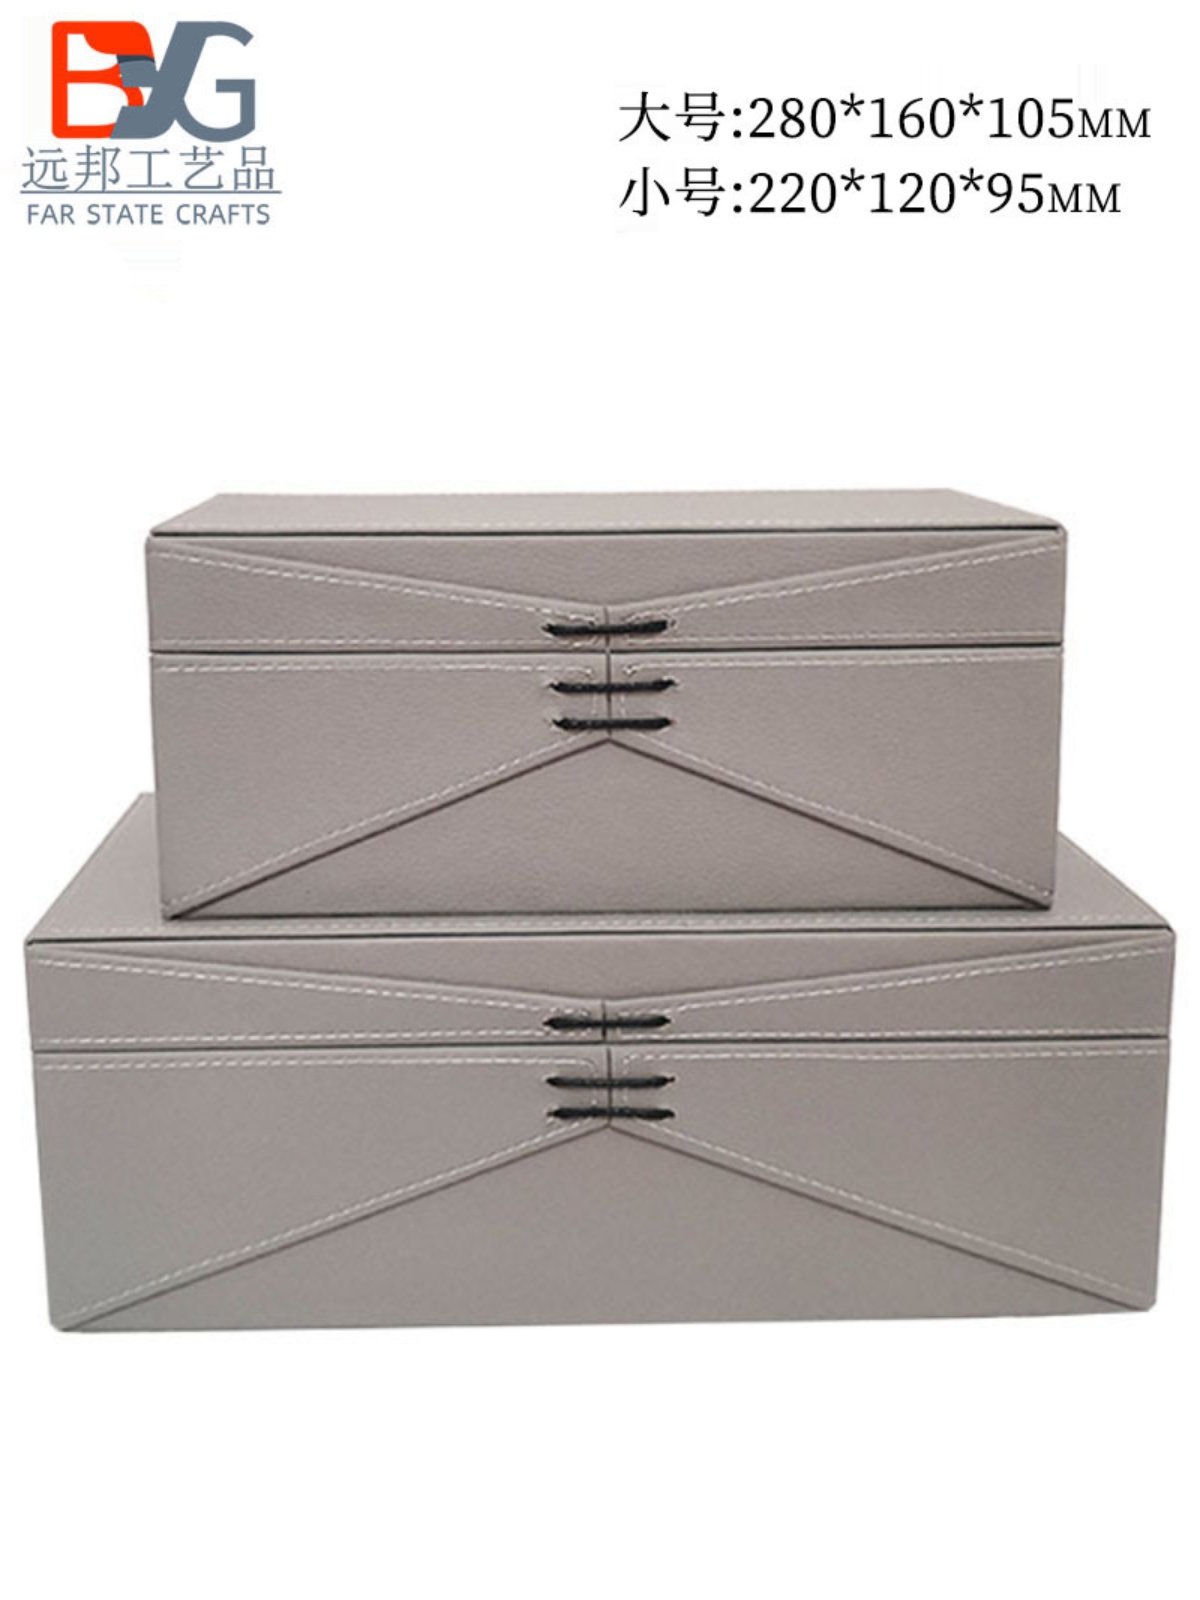 衣柜收纳盒皮质样板房间家用装饰道具简约便捷新中式小储物盒摆件-封面